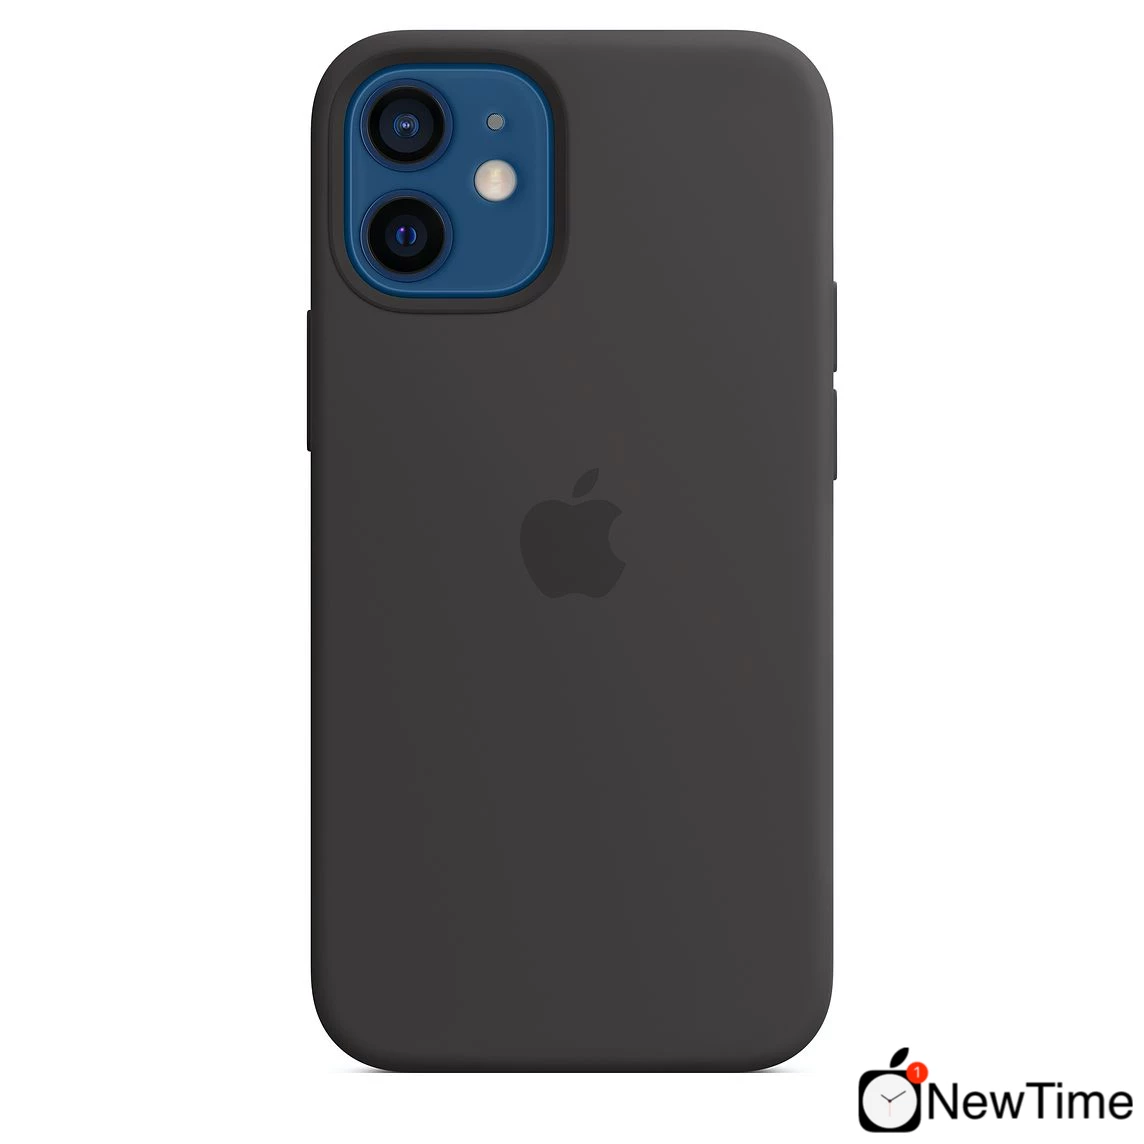 Купить Чехол Apple iPhone 12 mini Silicone Case with MagSafe - Black  (MHKX3) выгодно в Киеве | цена и обзор в интернет магазине NewTime